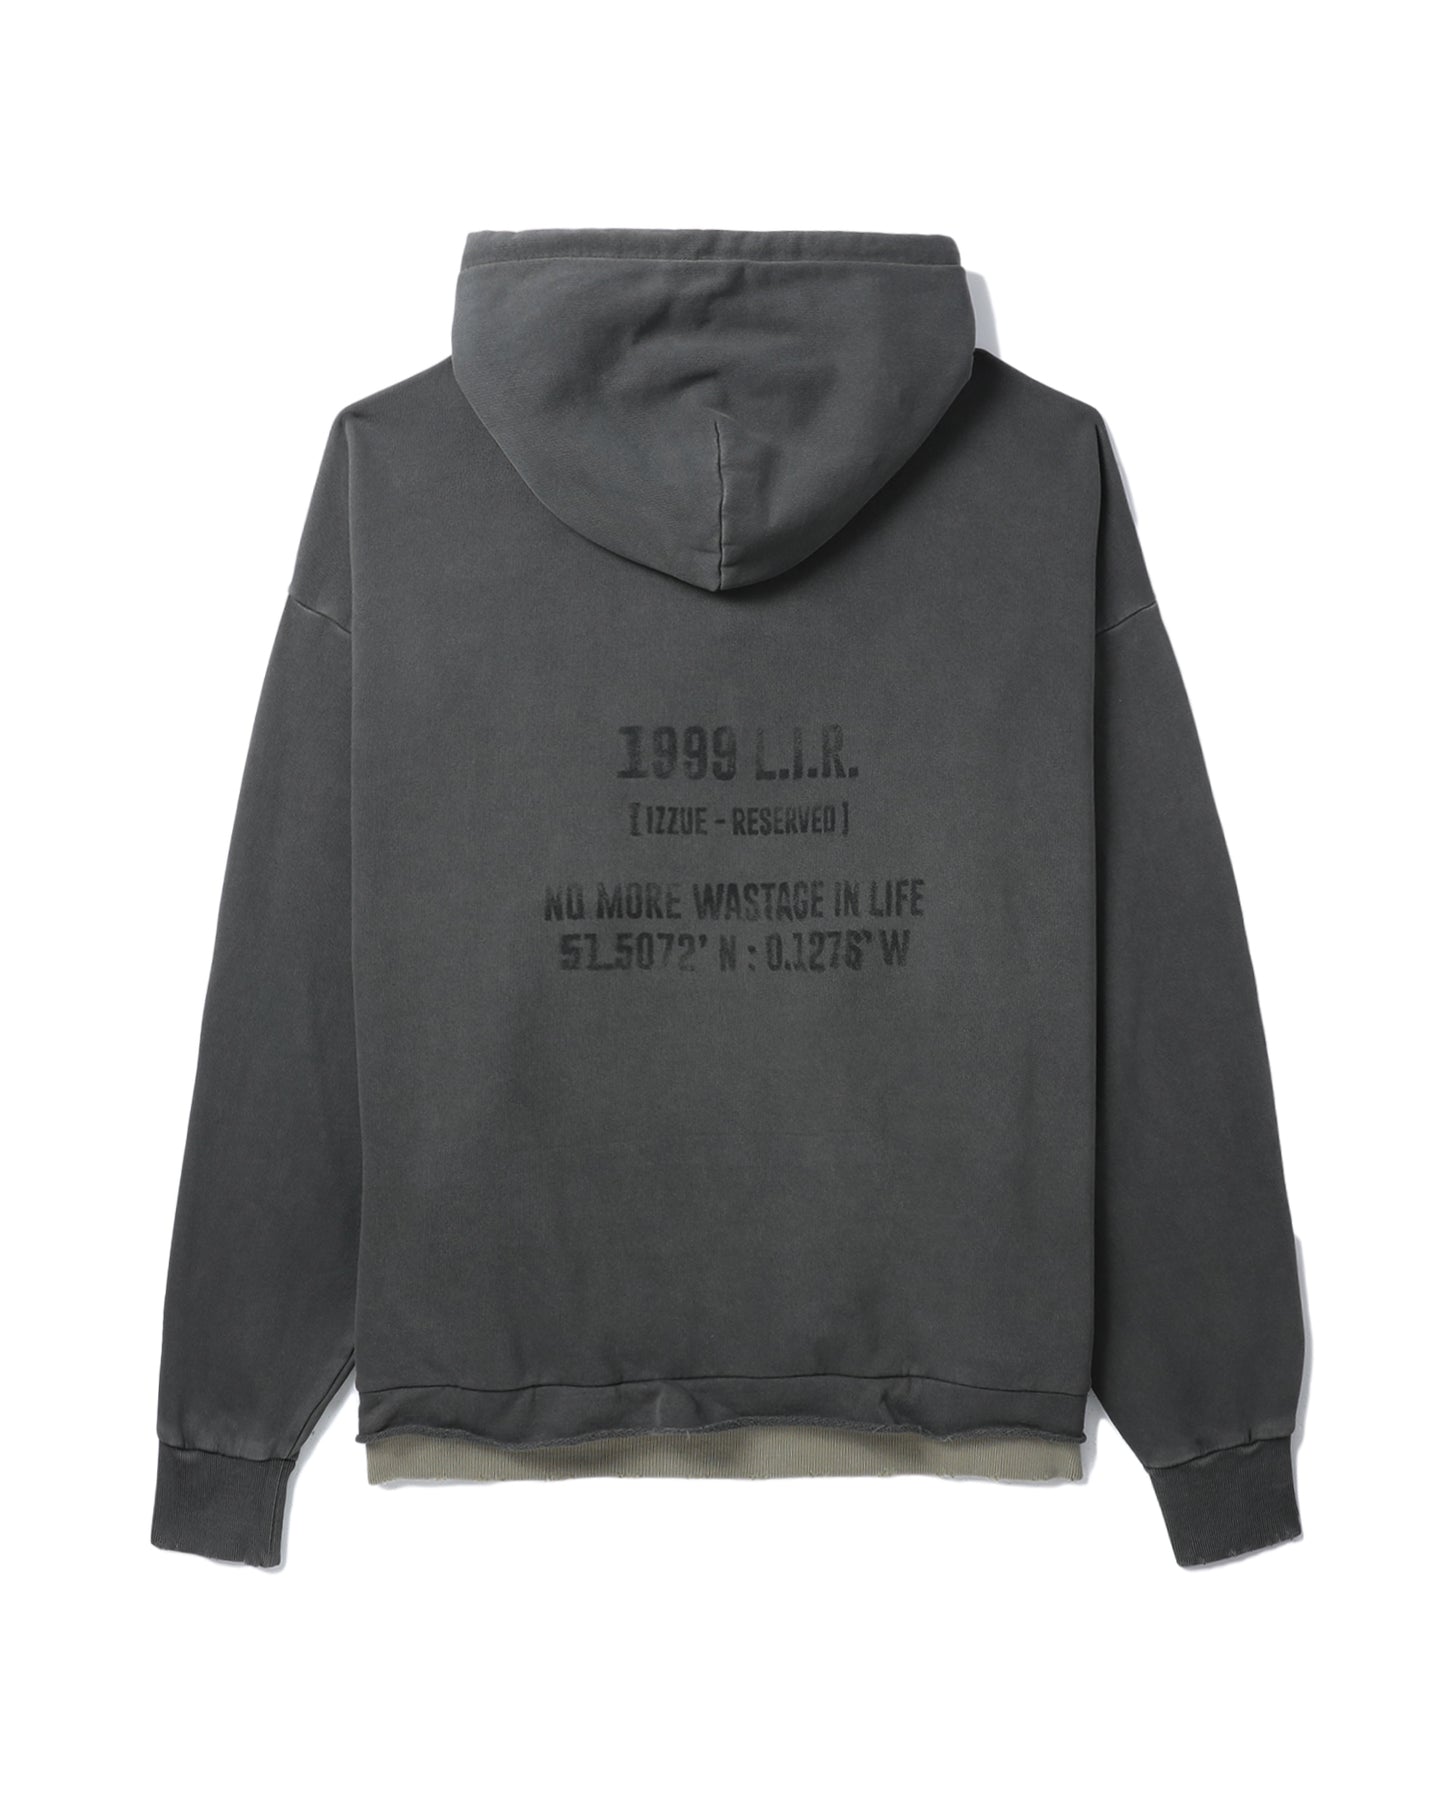 Izzue Mens Sweatshirt in Charcoal Color